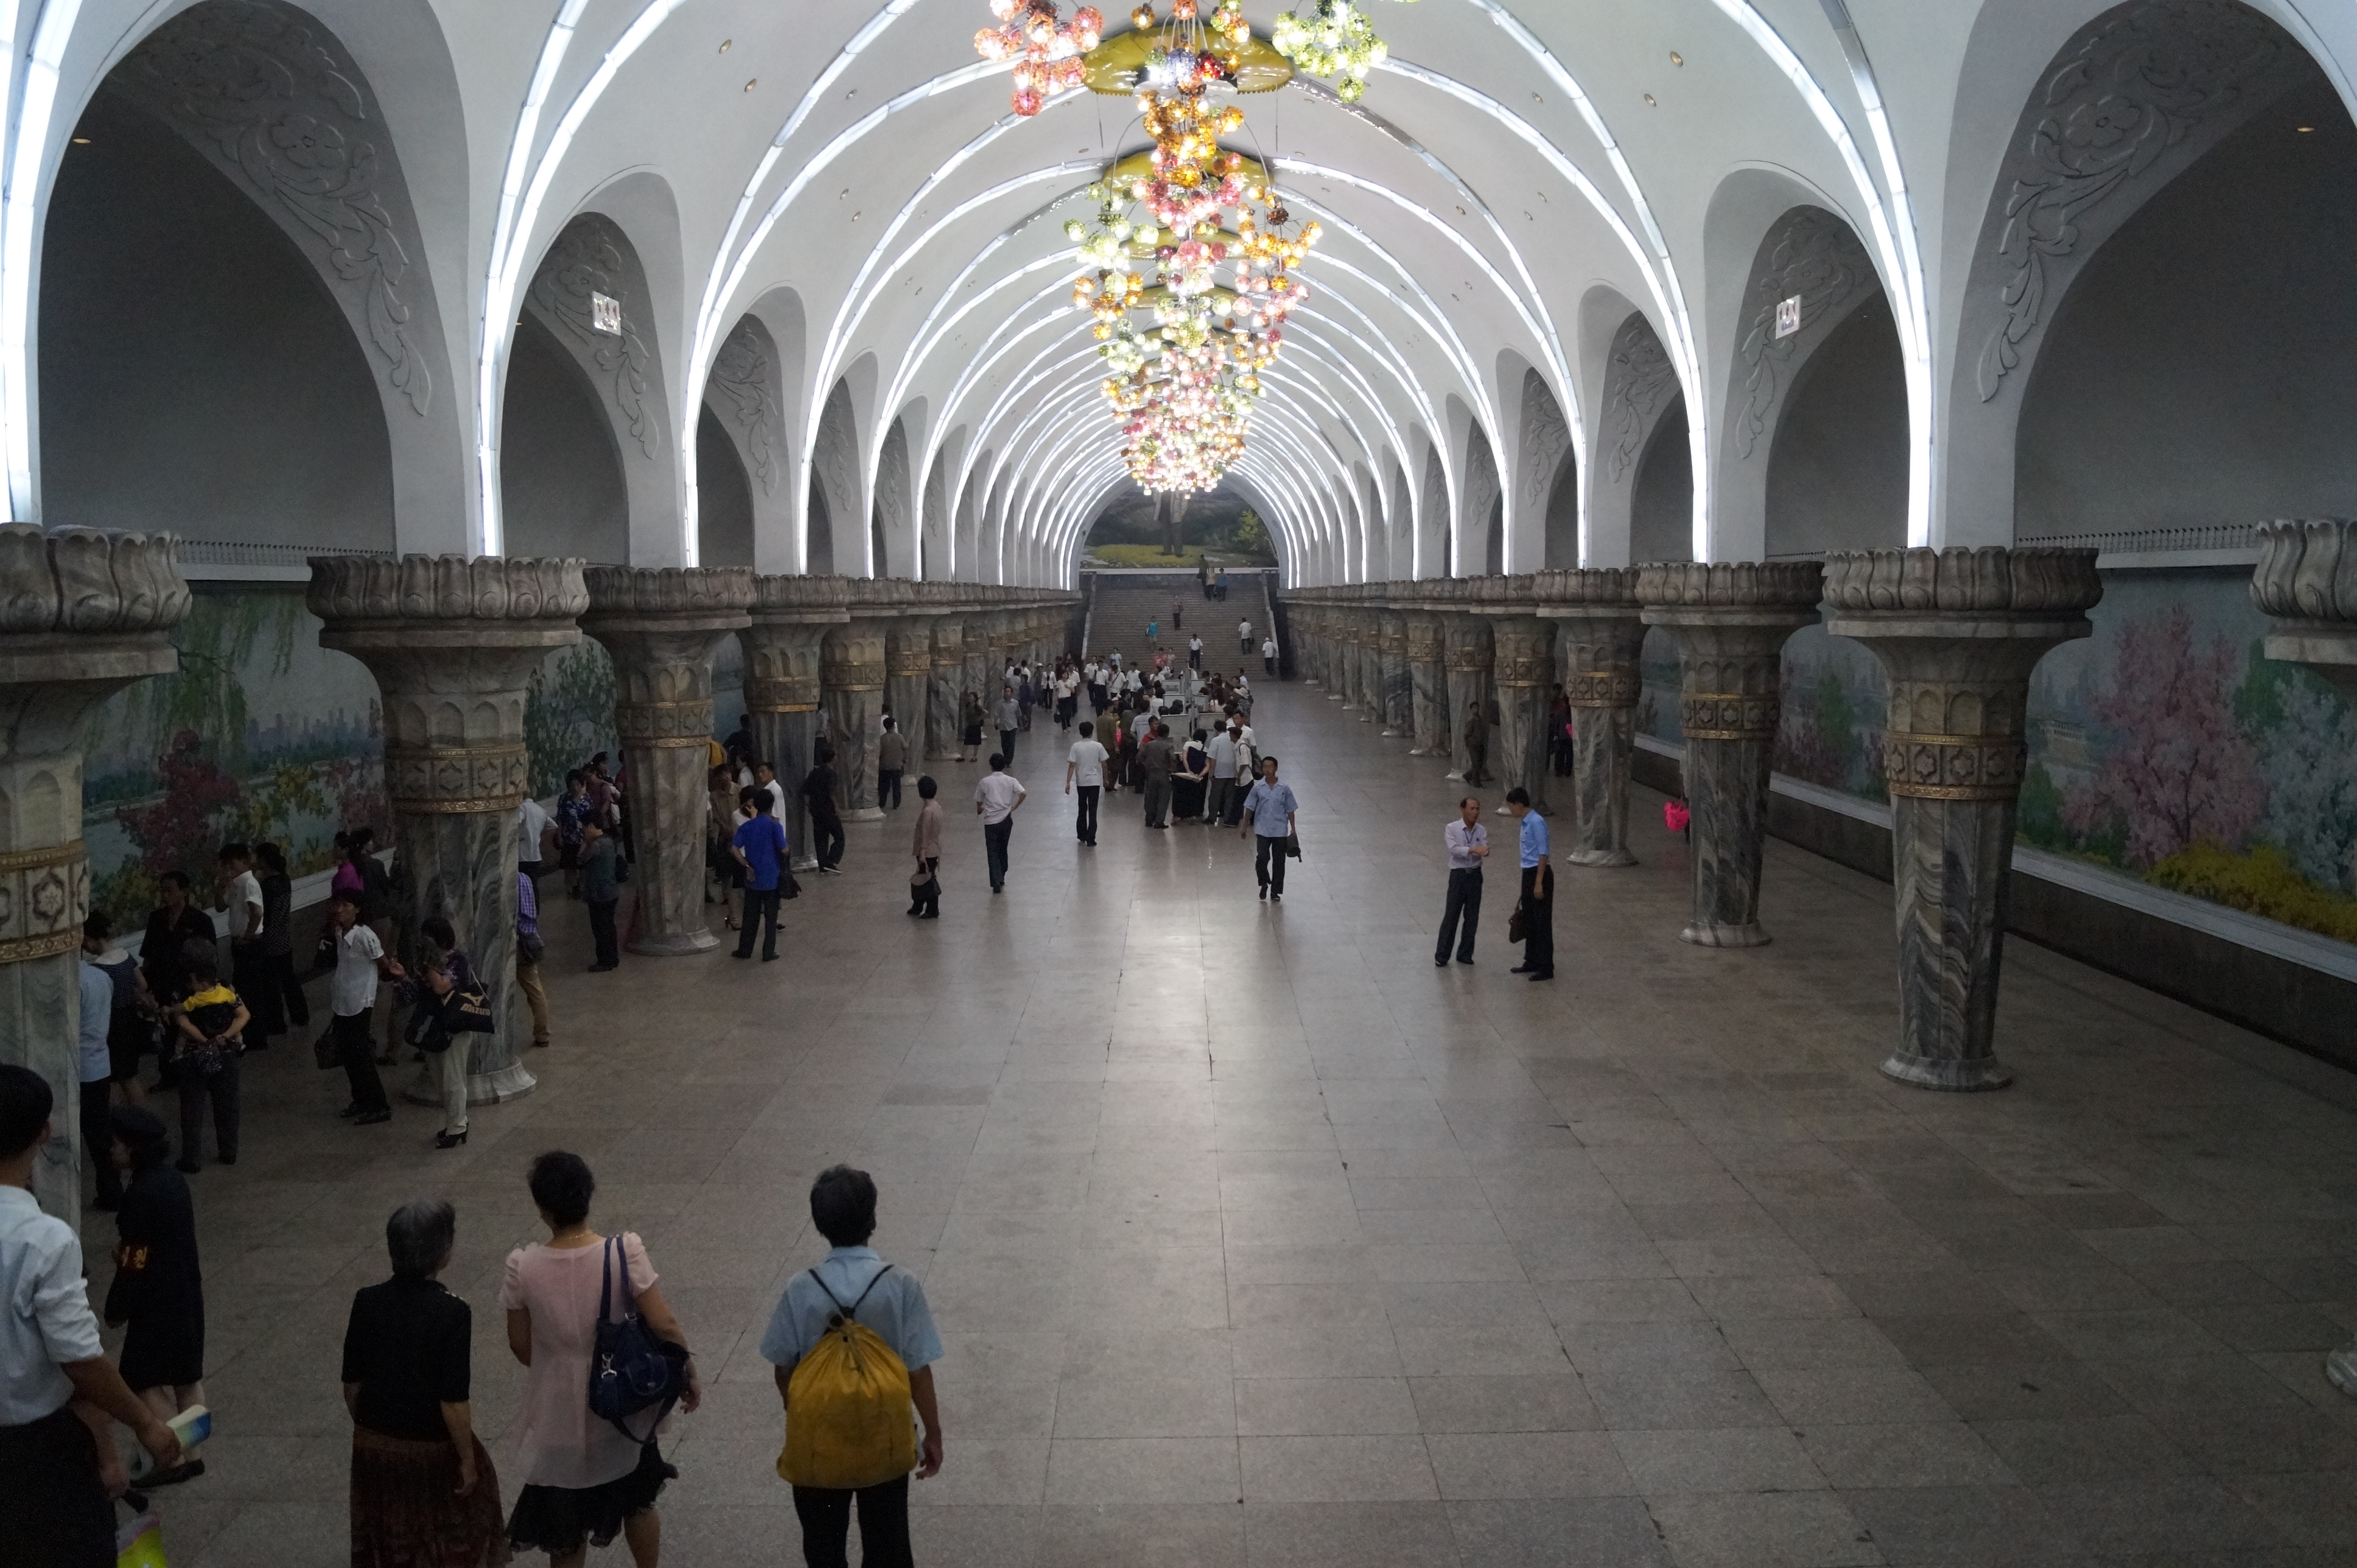 Eine U-Bahn-Station in Pjöngjang mit marmorverkleidung der Wände und Bogenförmiger Decke.